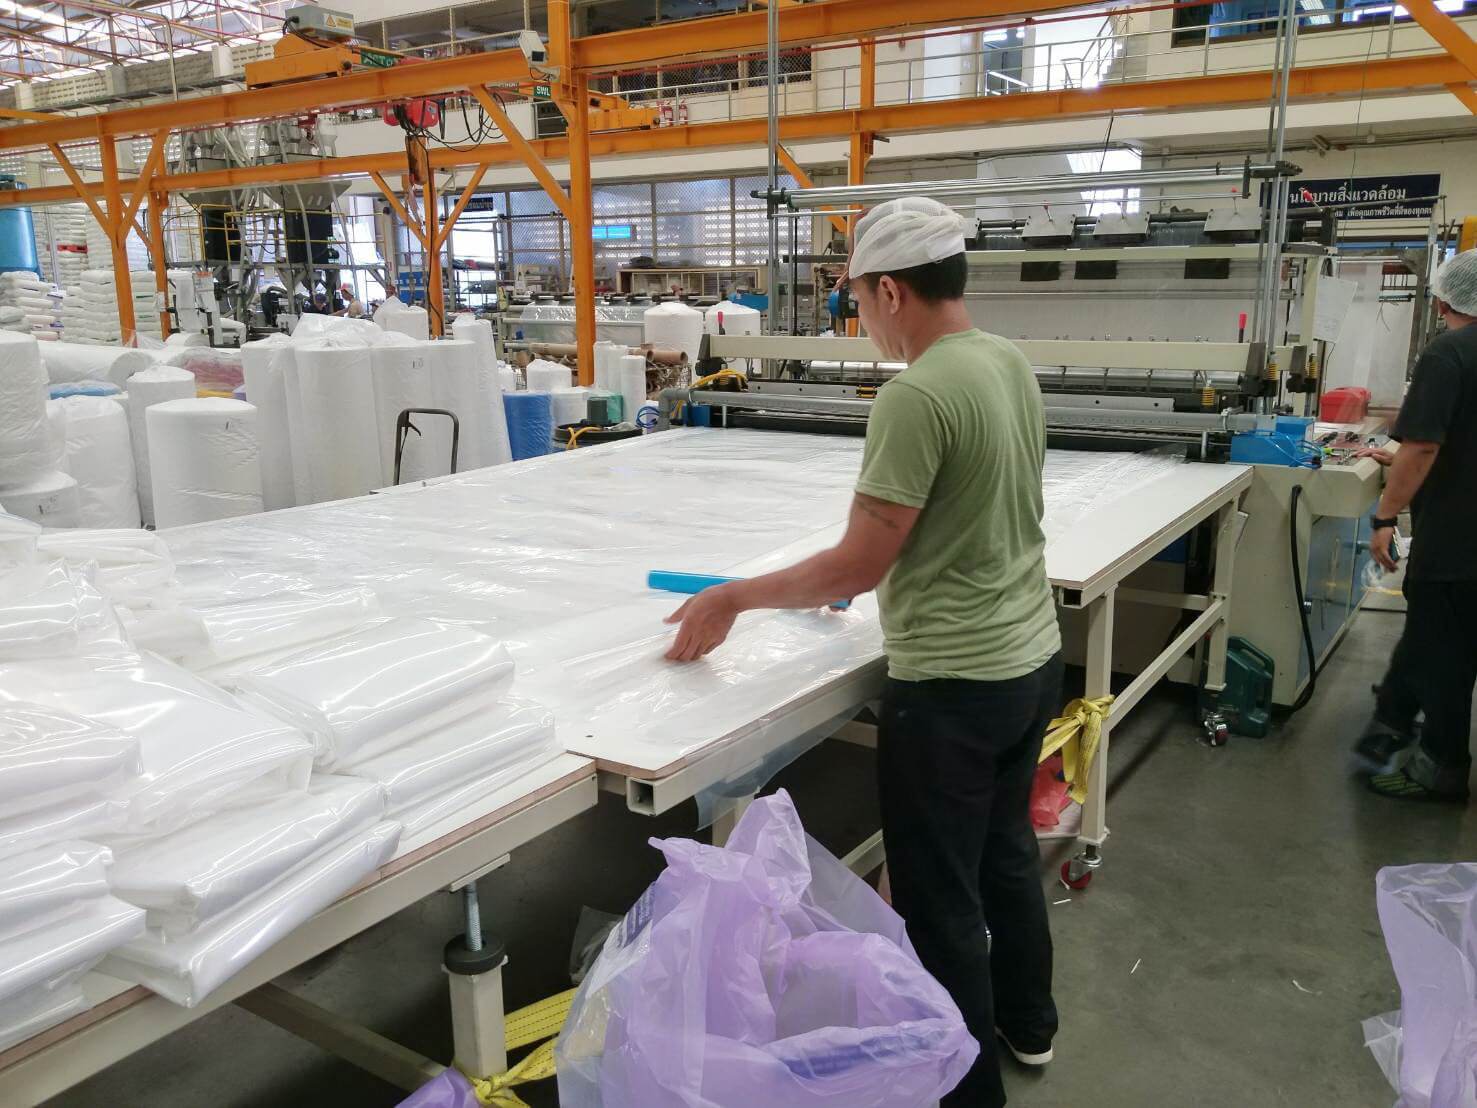 Notre client thaïlandais a commandé une machine de fabrication de sacs plats extra longs afin de satisfaire la demande de production de sacs de lit